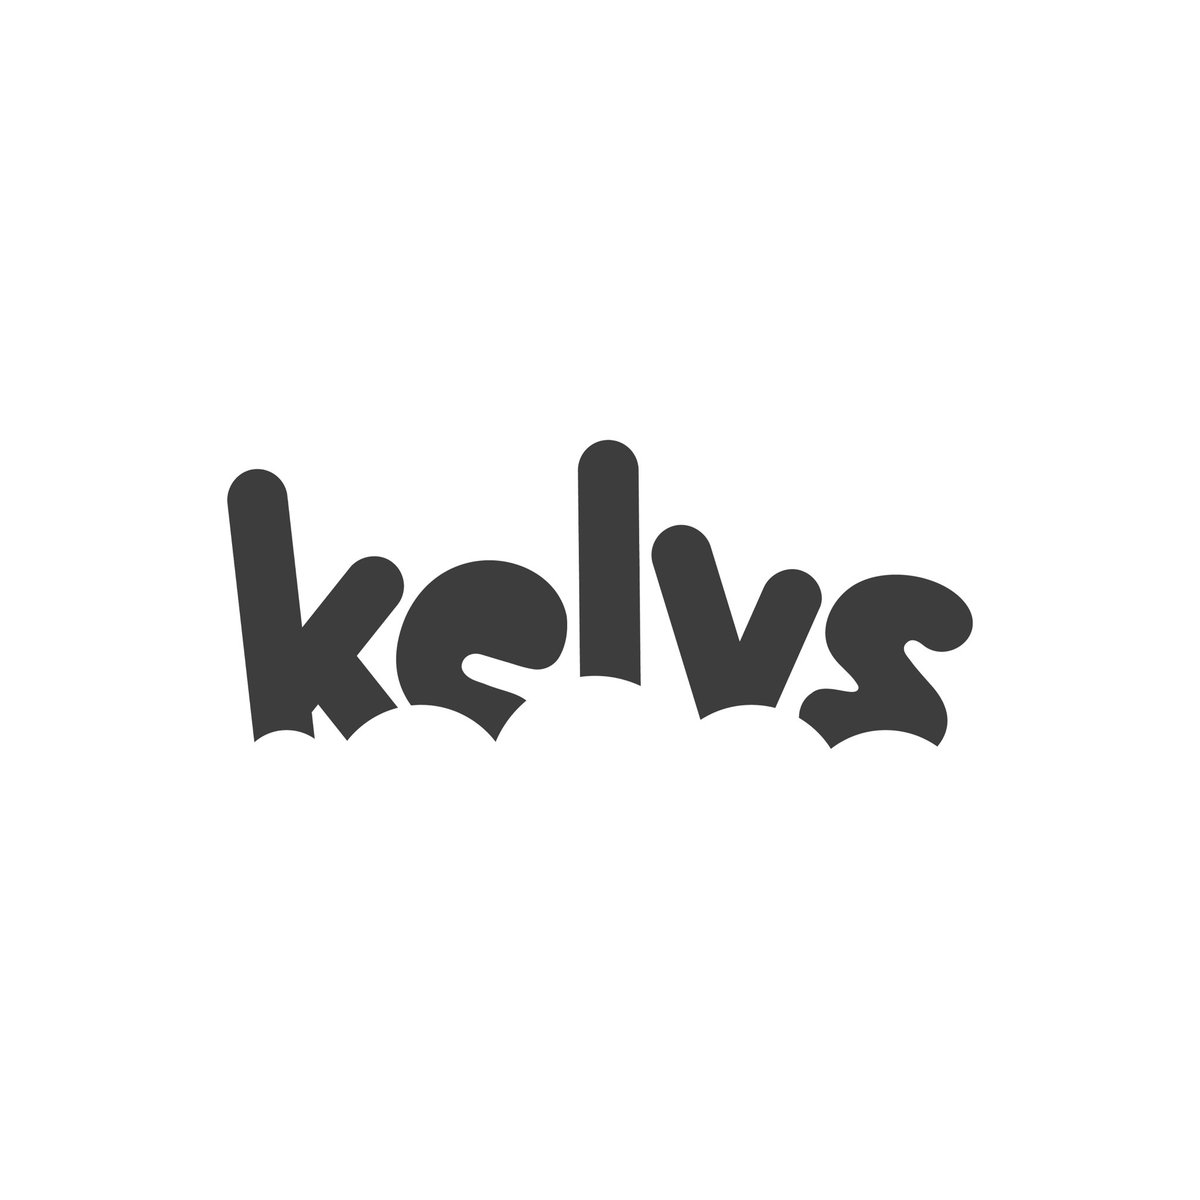 「」|kelvs ☁️のイラスト